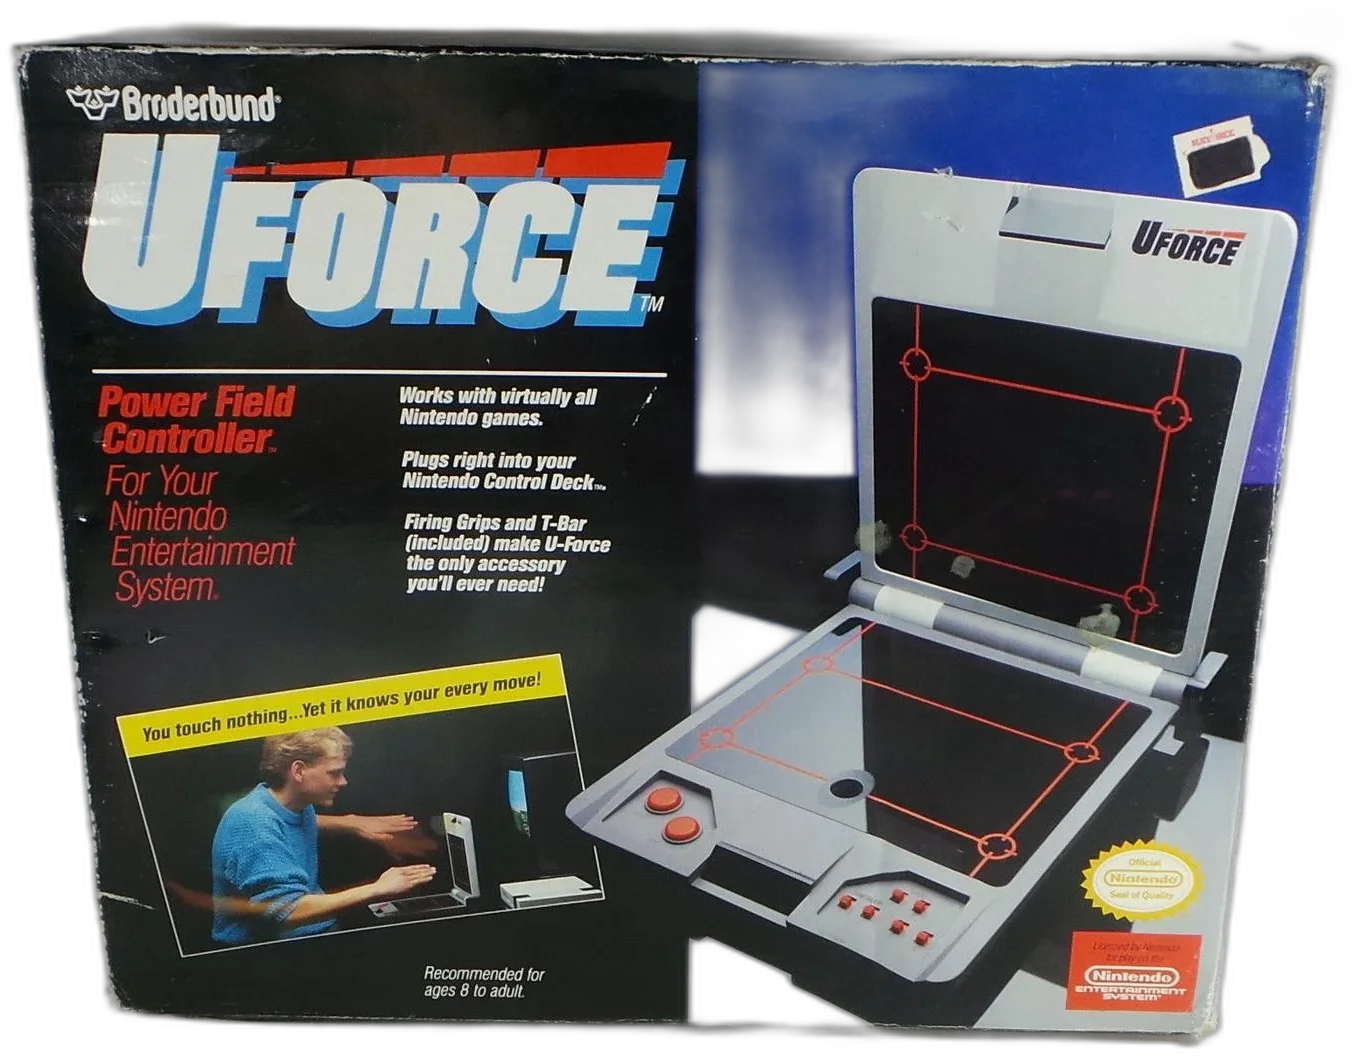  Broderbund NES U-Force Power Field Controller